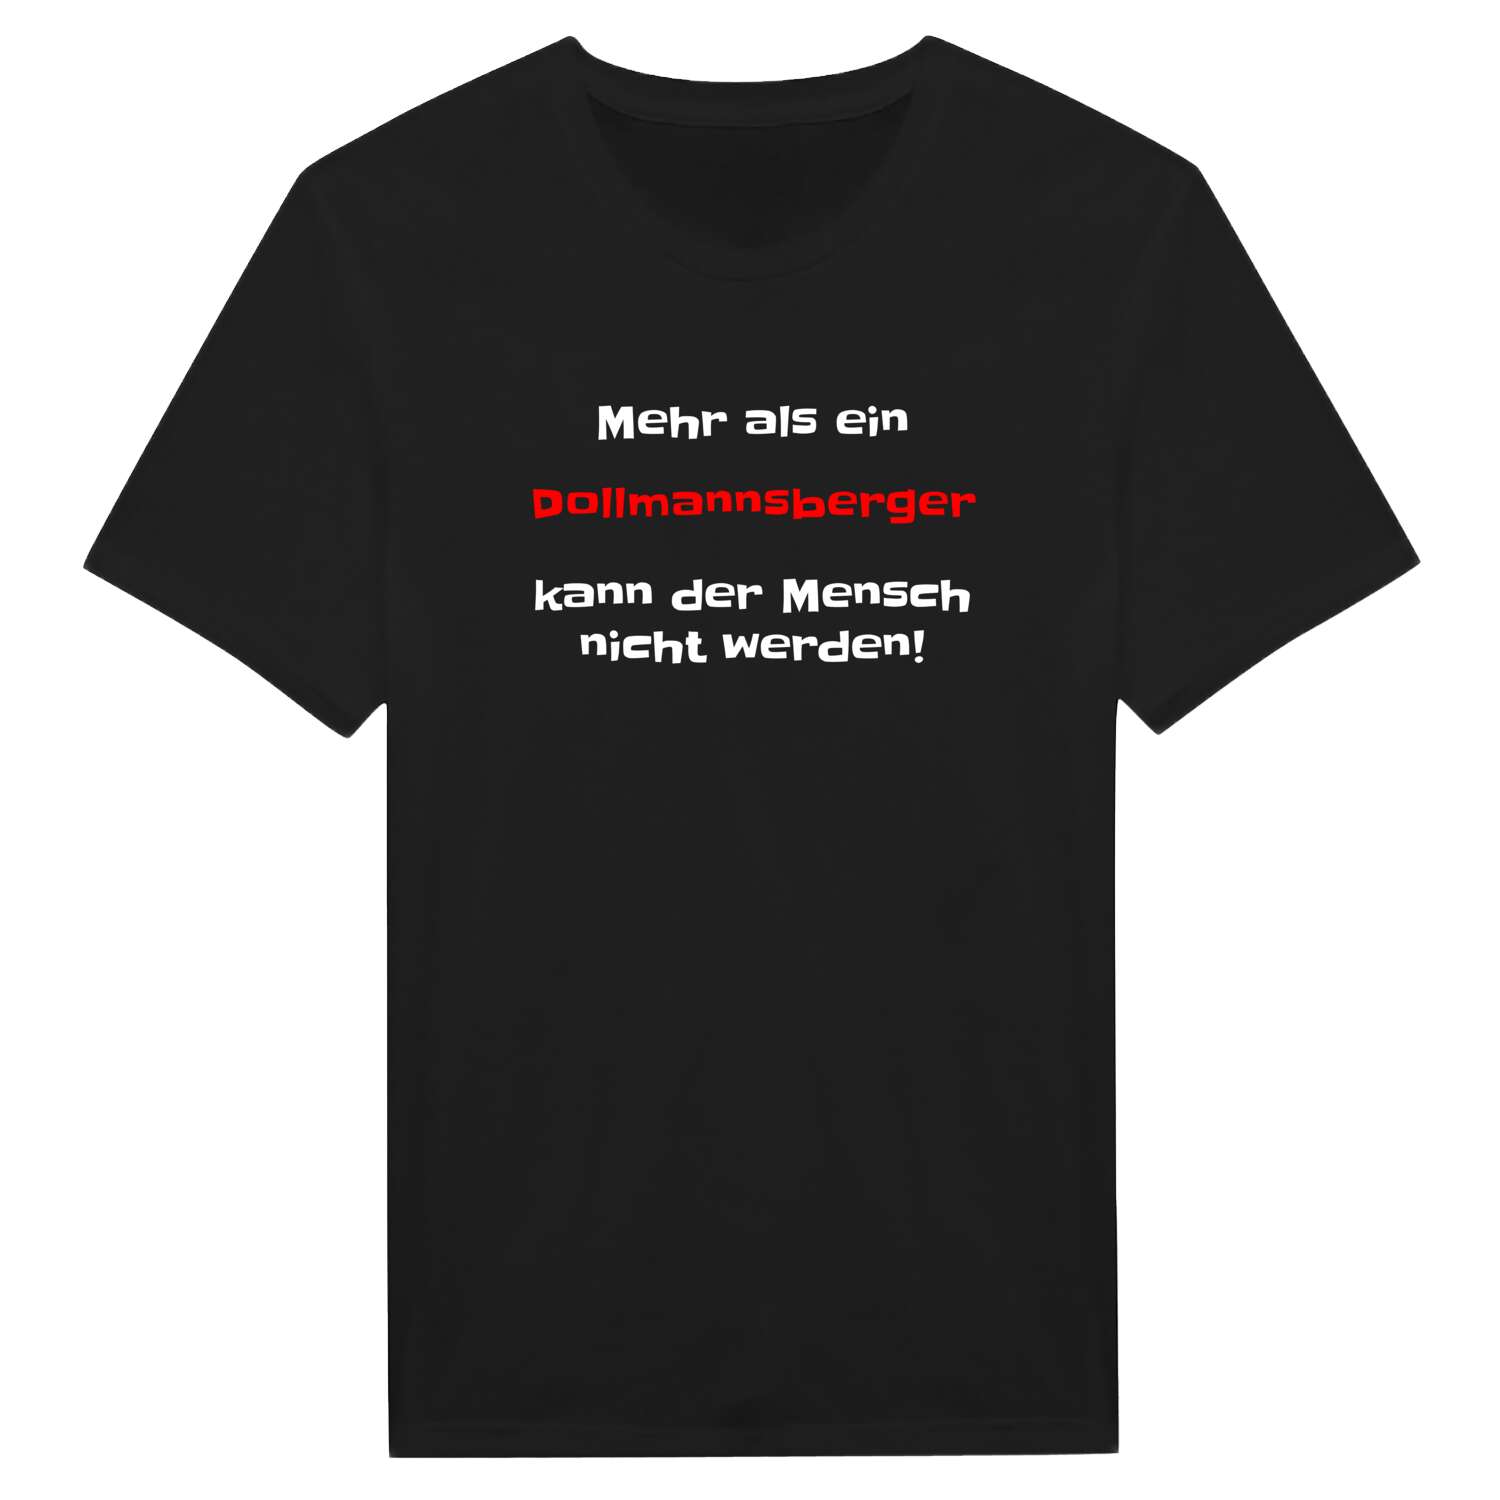 Dollmannsberg T-Shirt »Mehr als ein«